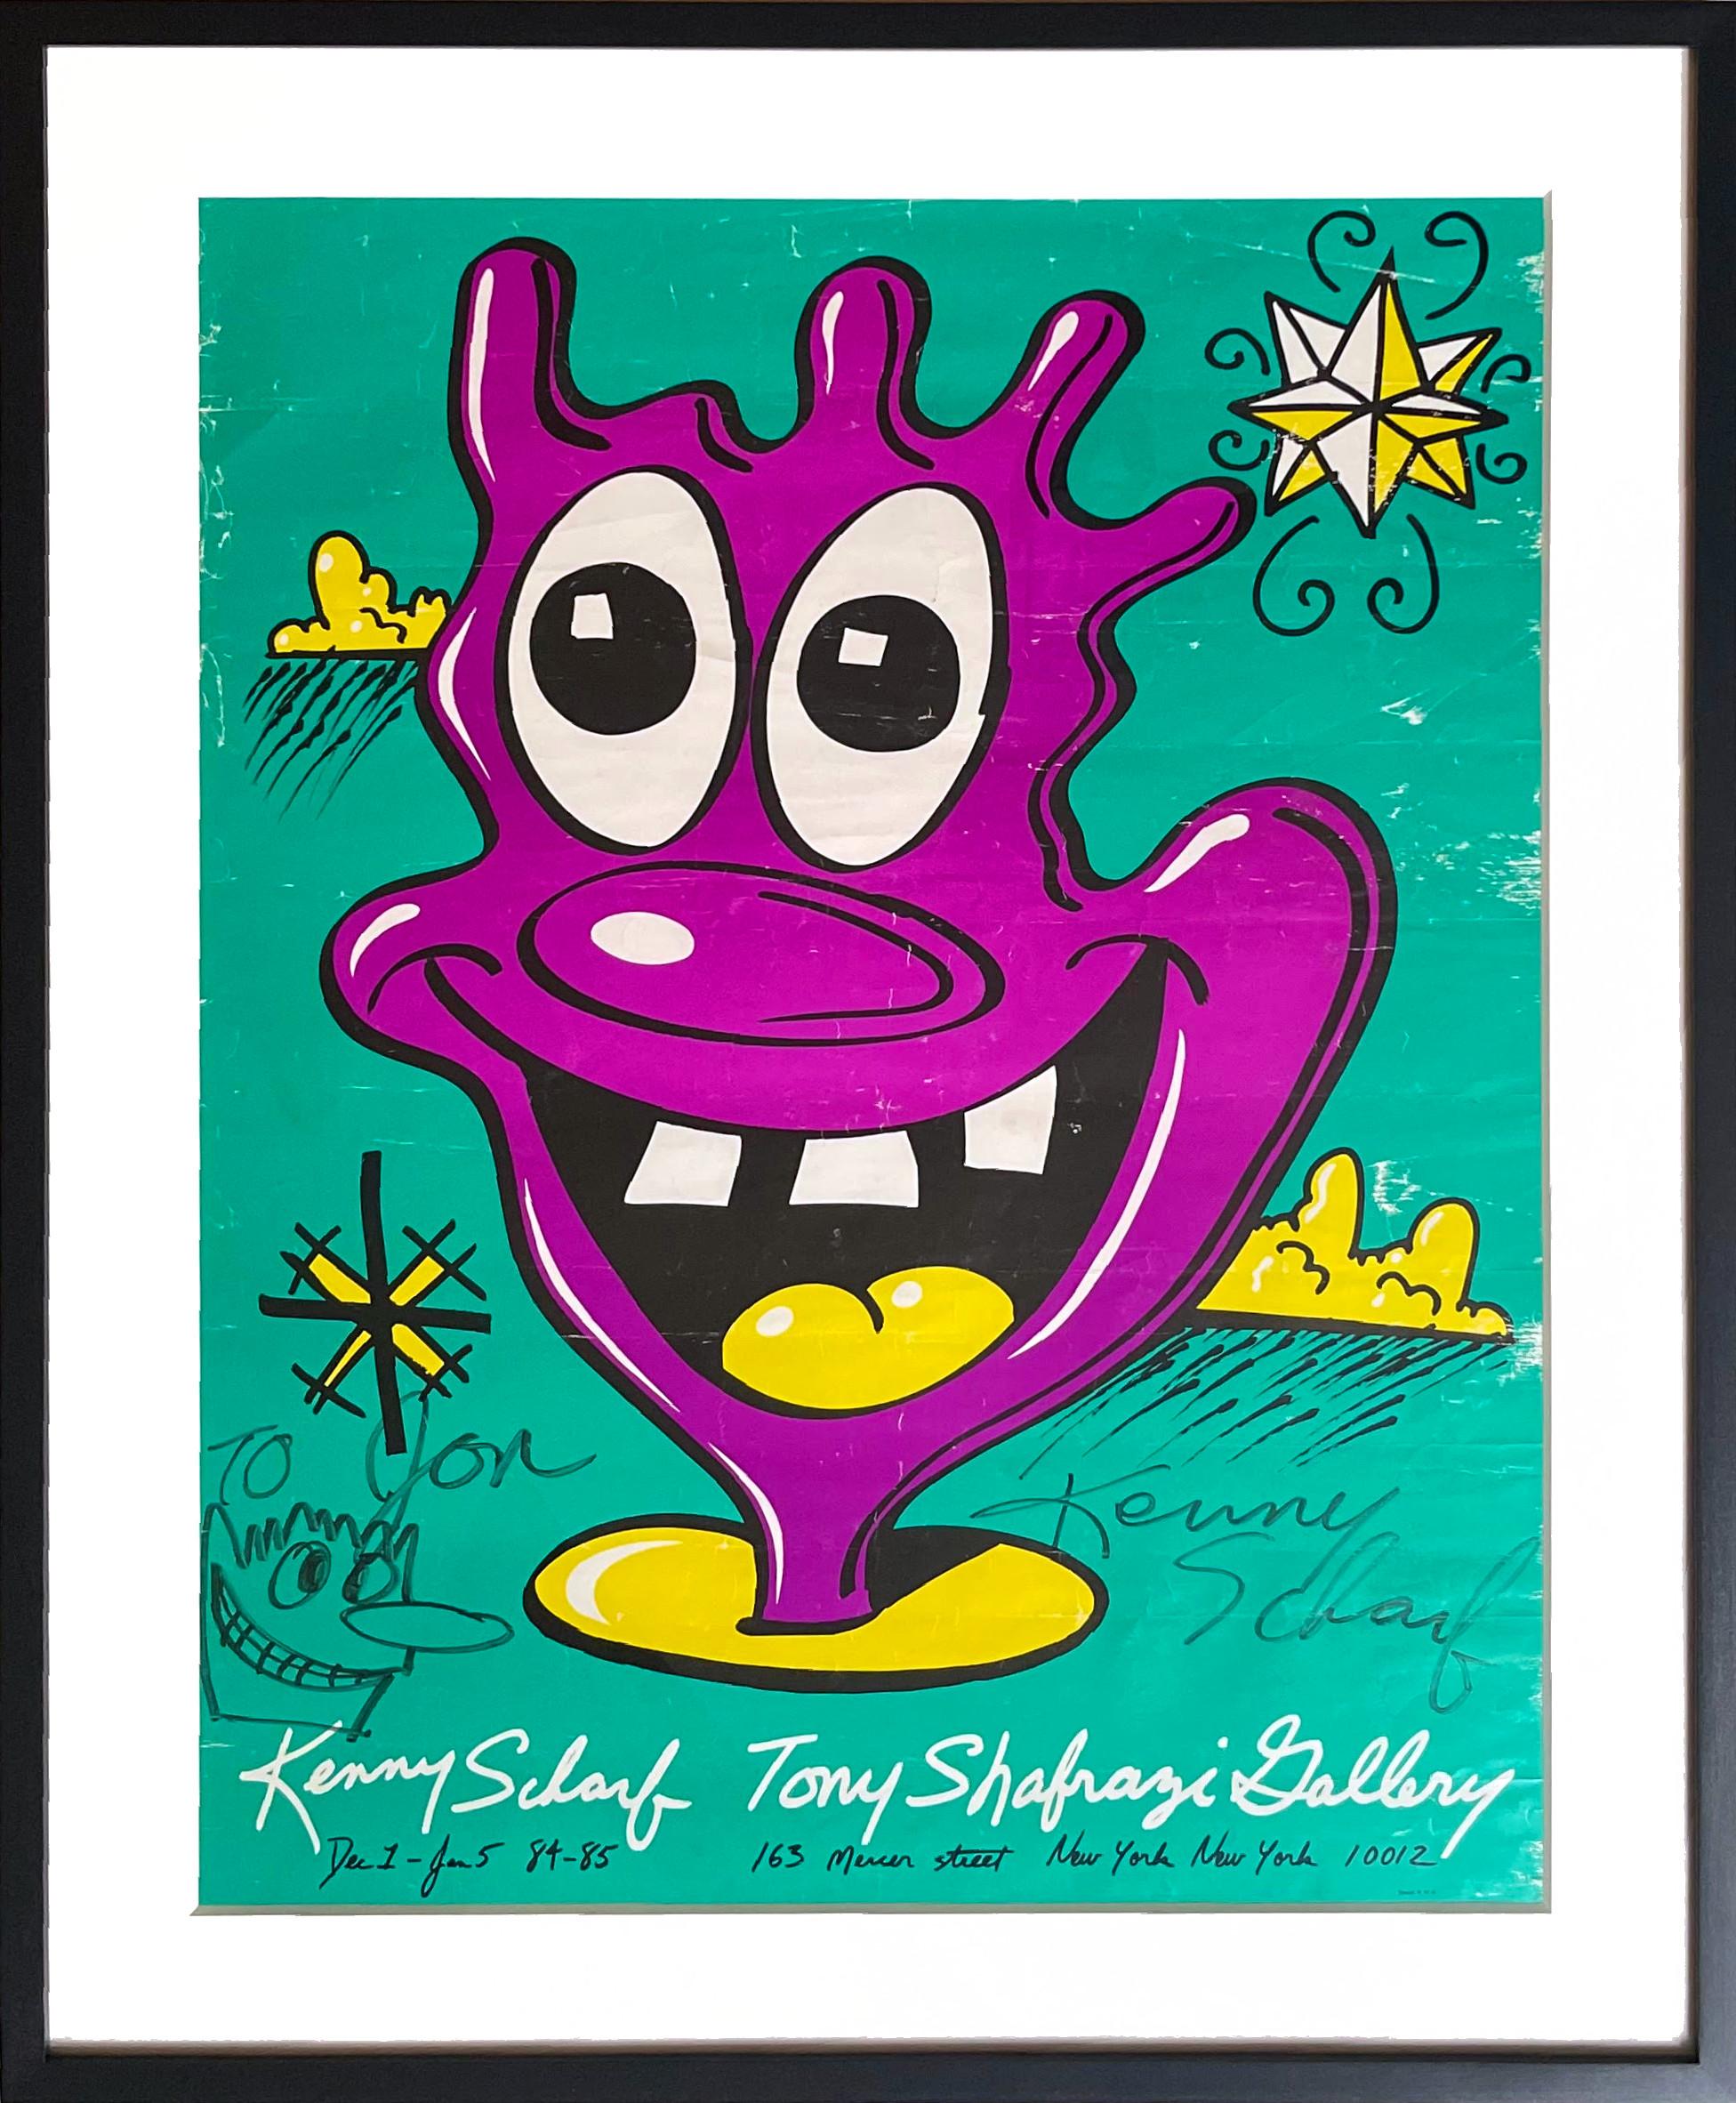 Abstract Drawing Kenny Scharf - dessin unique sur l'affiche de Tony Shafrazi, signé et inscrit au petit ami de Warhol